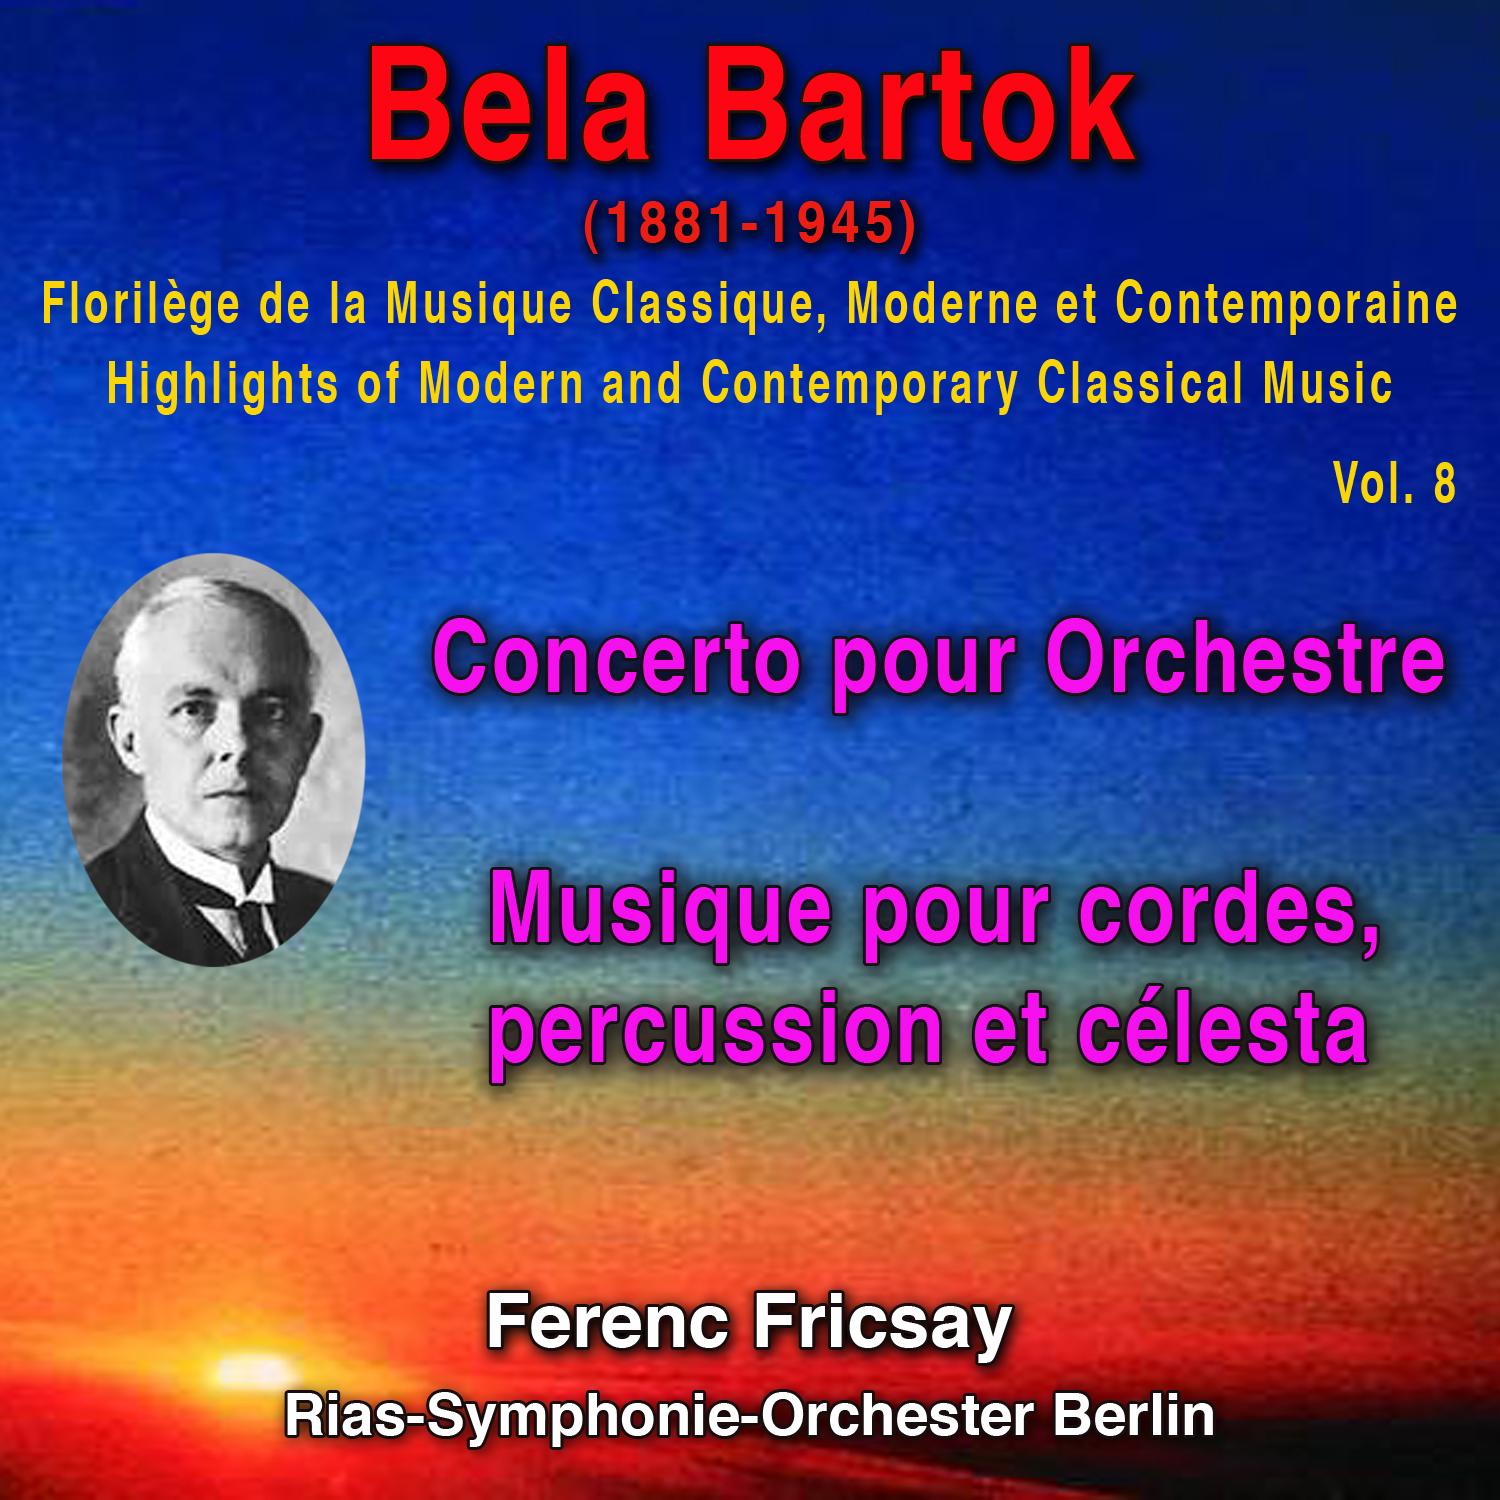 Concerto for Orchestra: Finale : Pesante, Presto